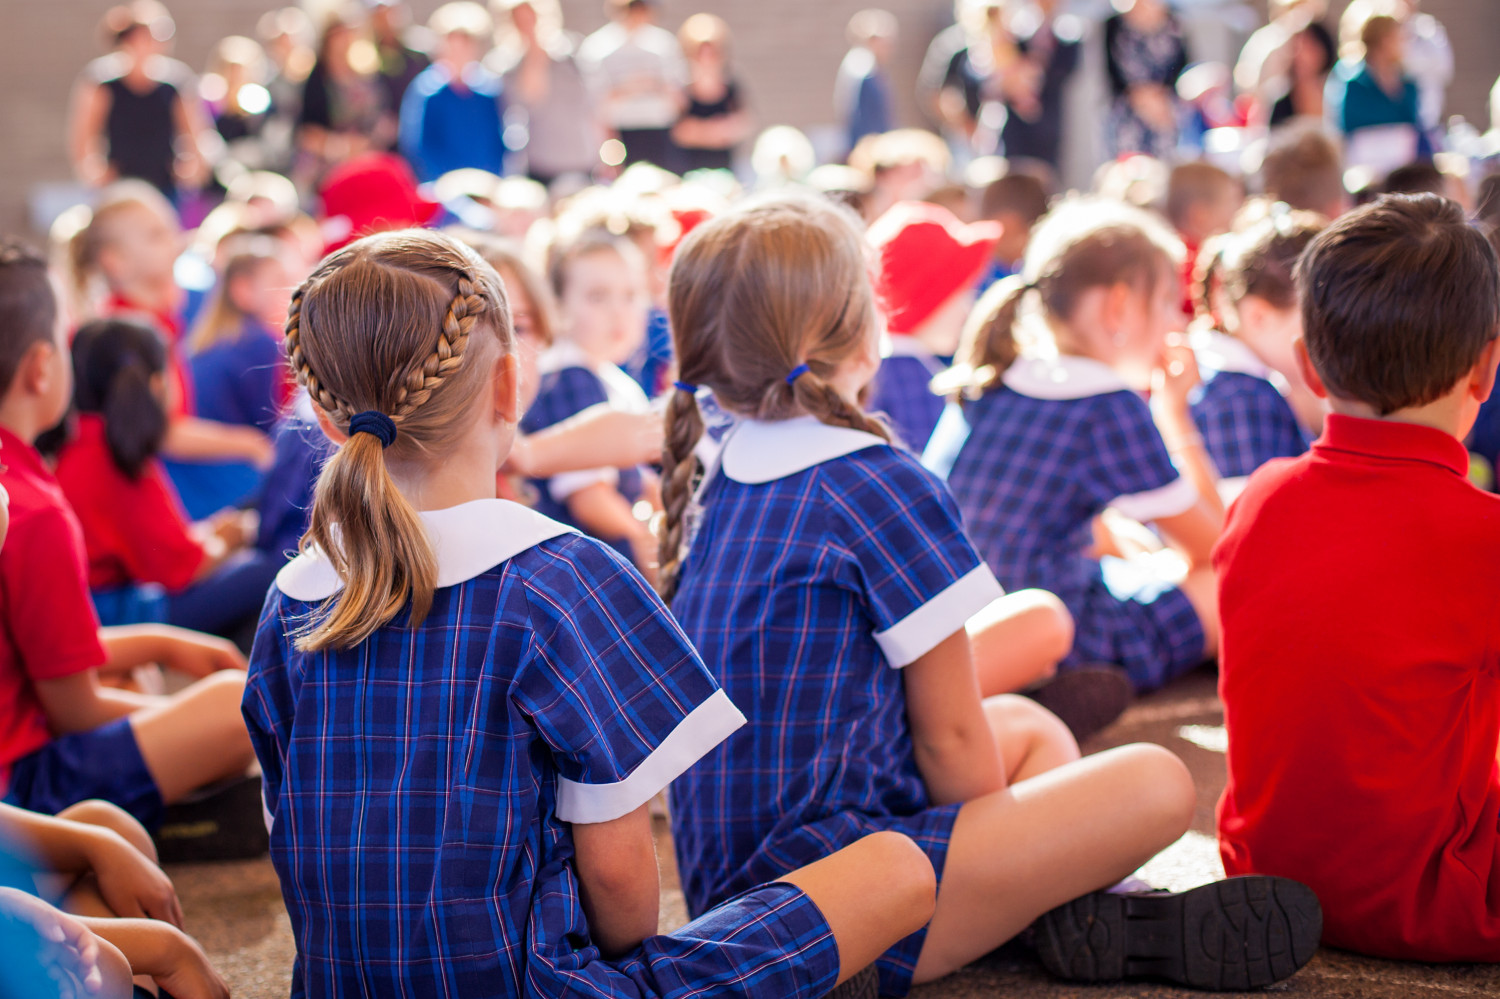 School children sat for an assembly